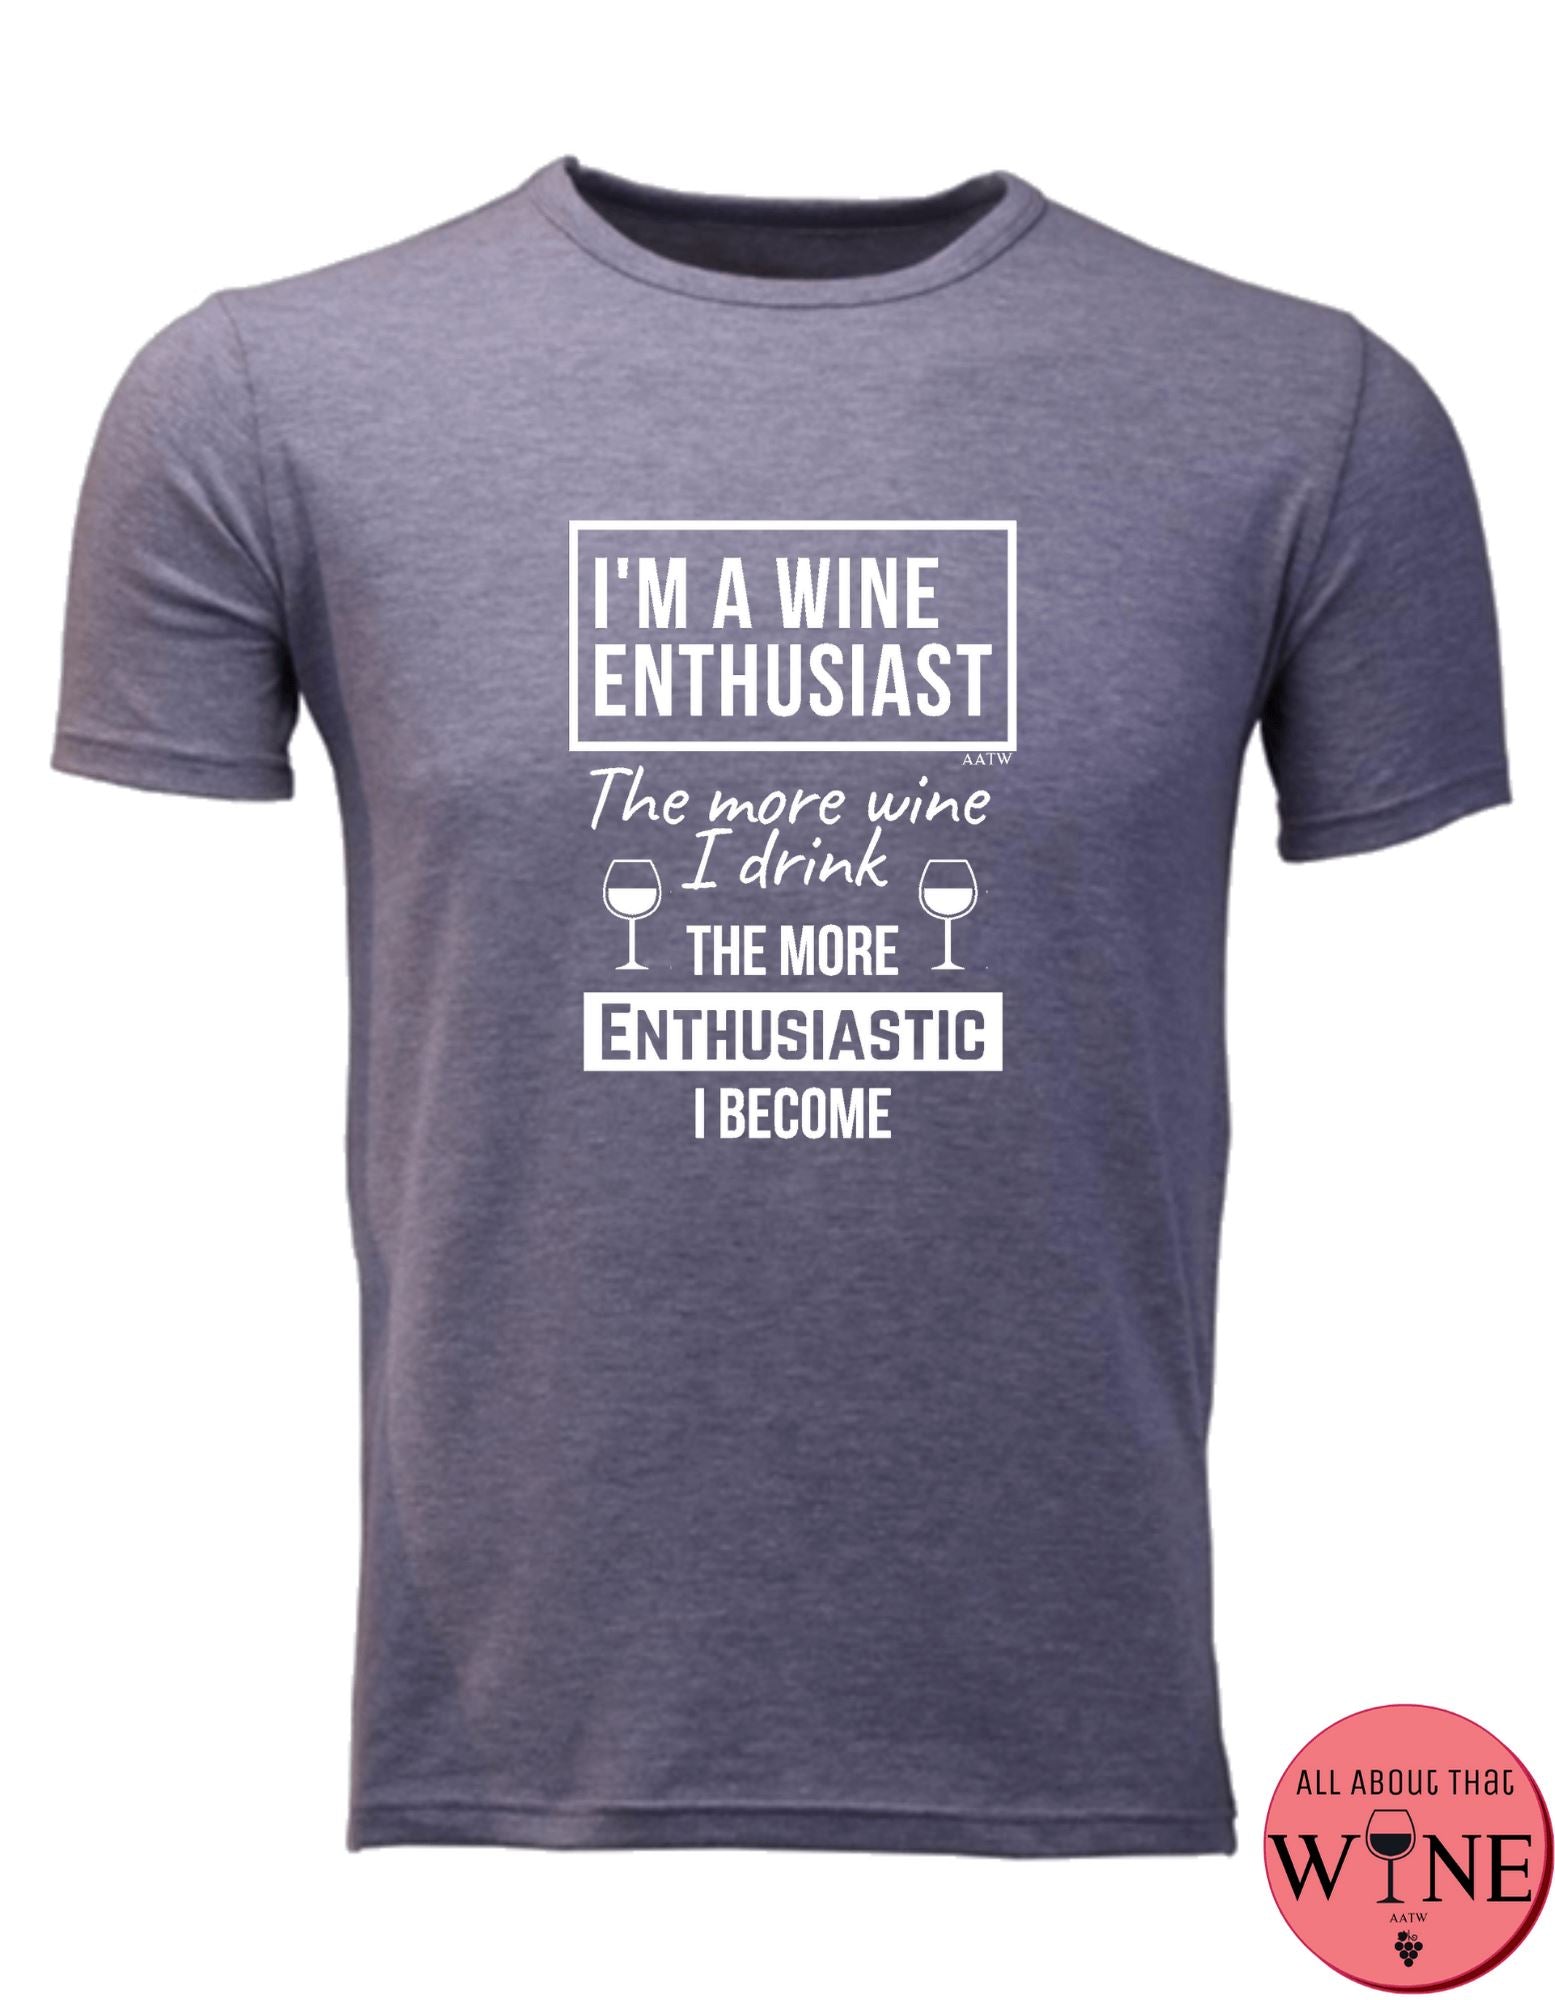 I'm A Wine Enthusiast - Unisex/Male M Grey melange with white